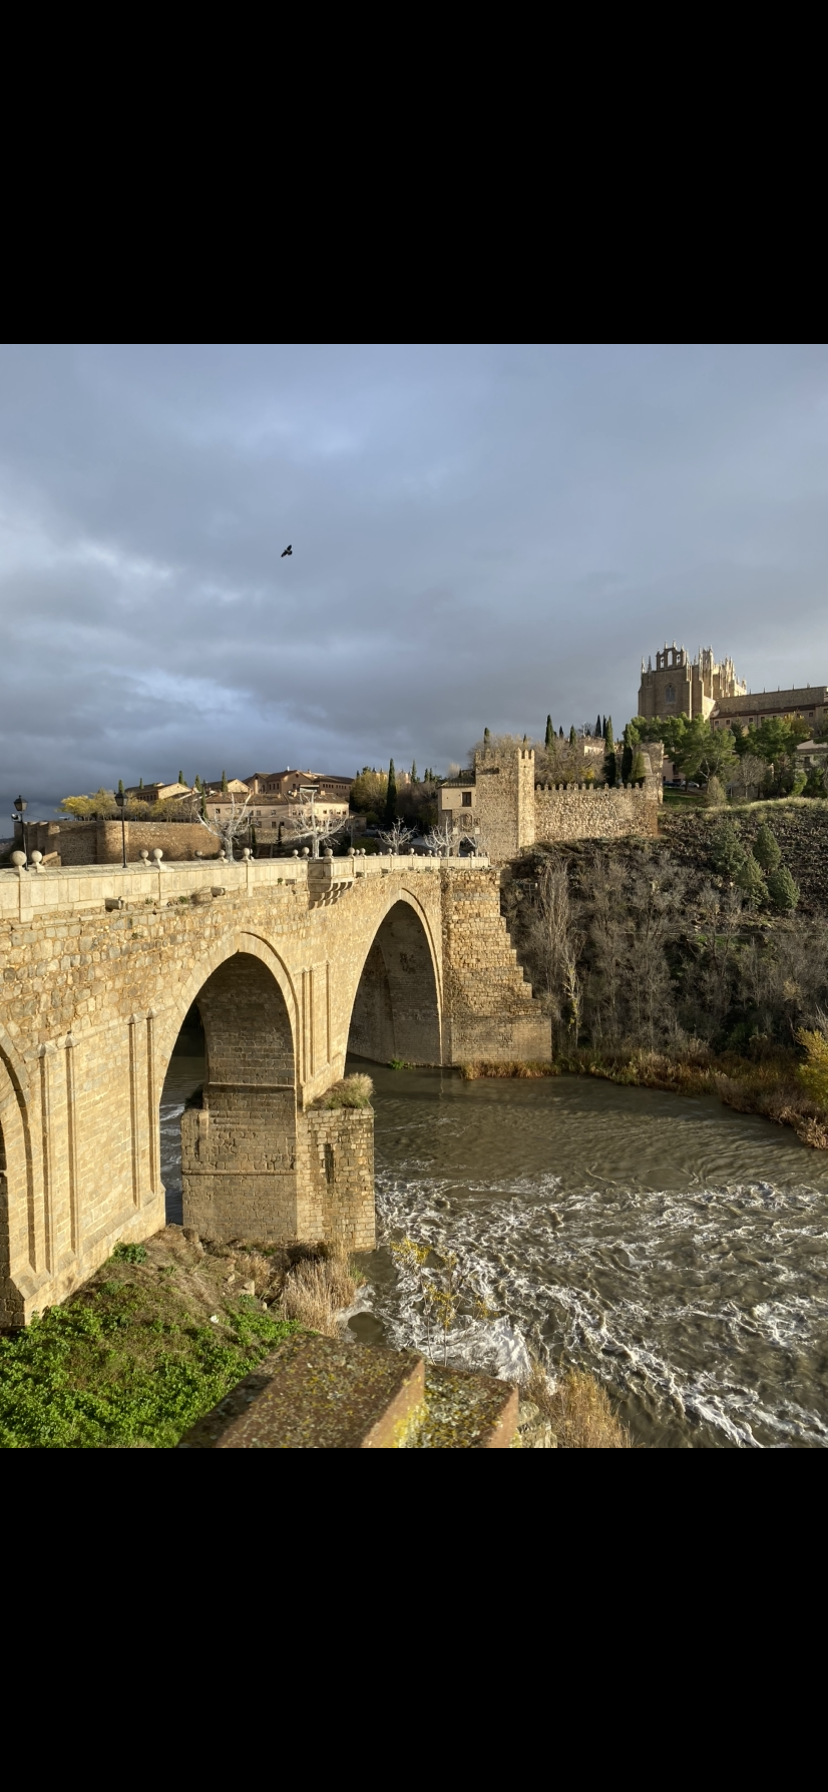 Auf diesem Bild ist eine Brücke in Spanien zu sehen.